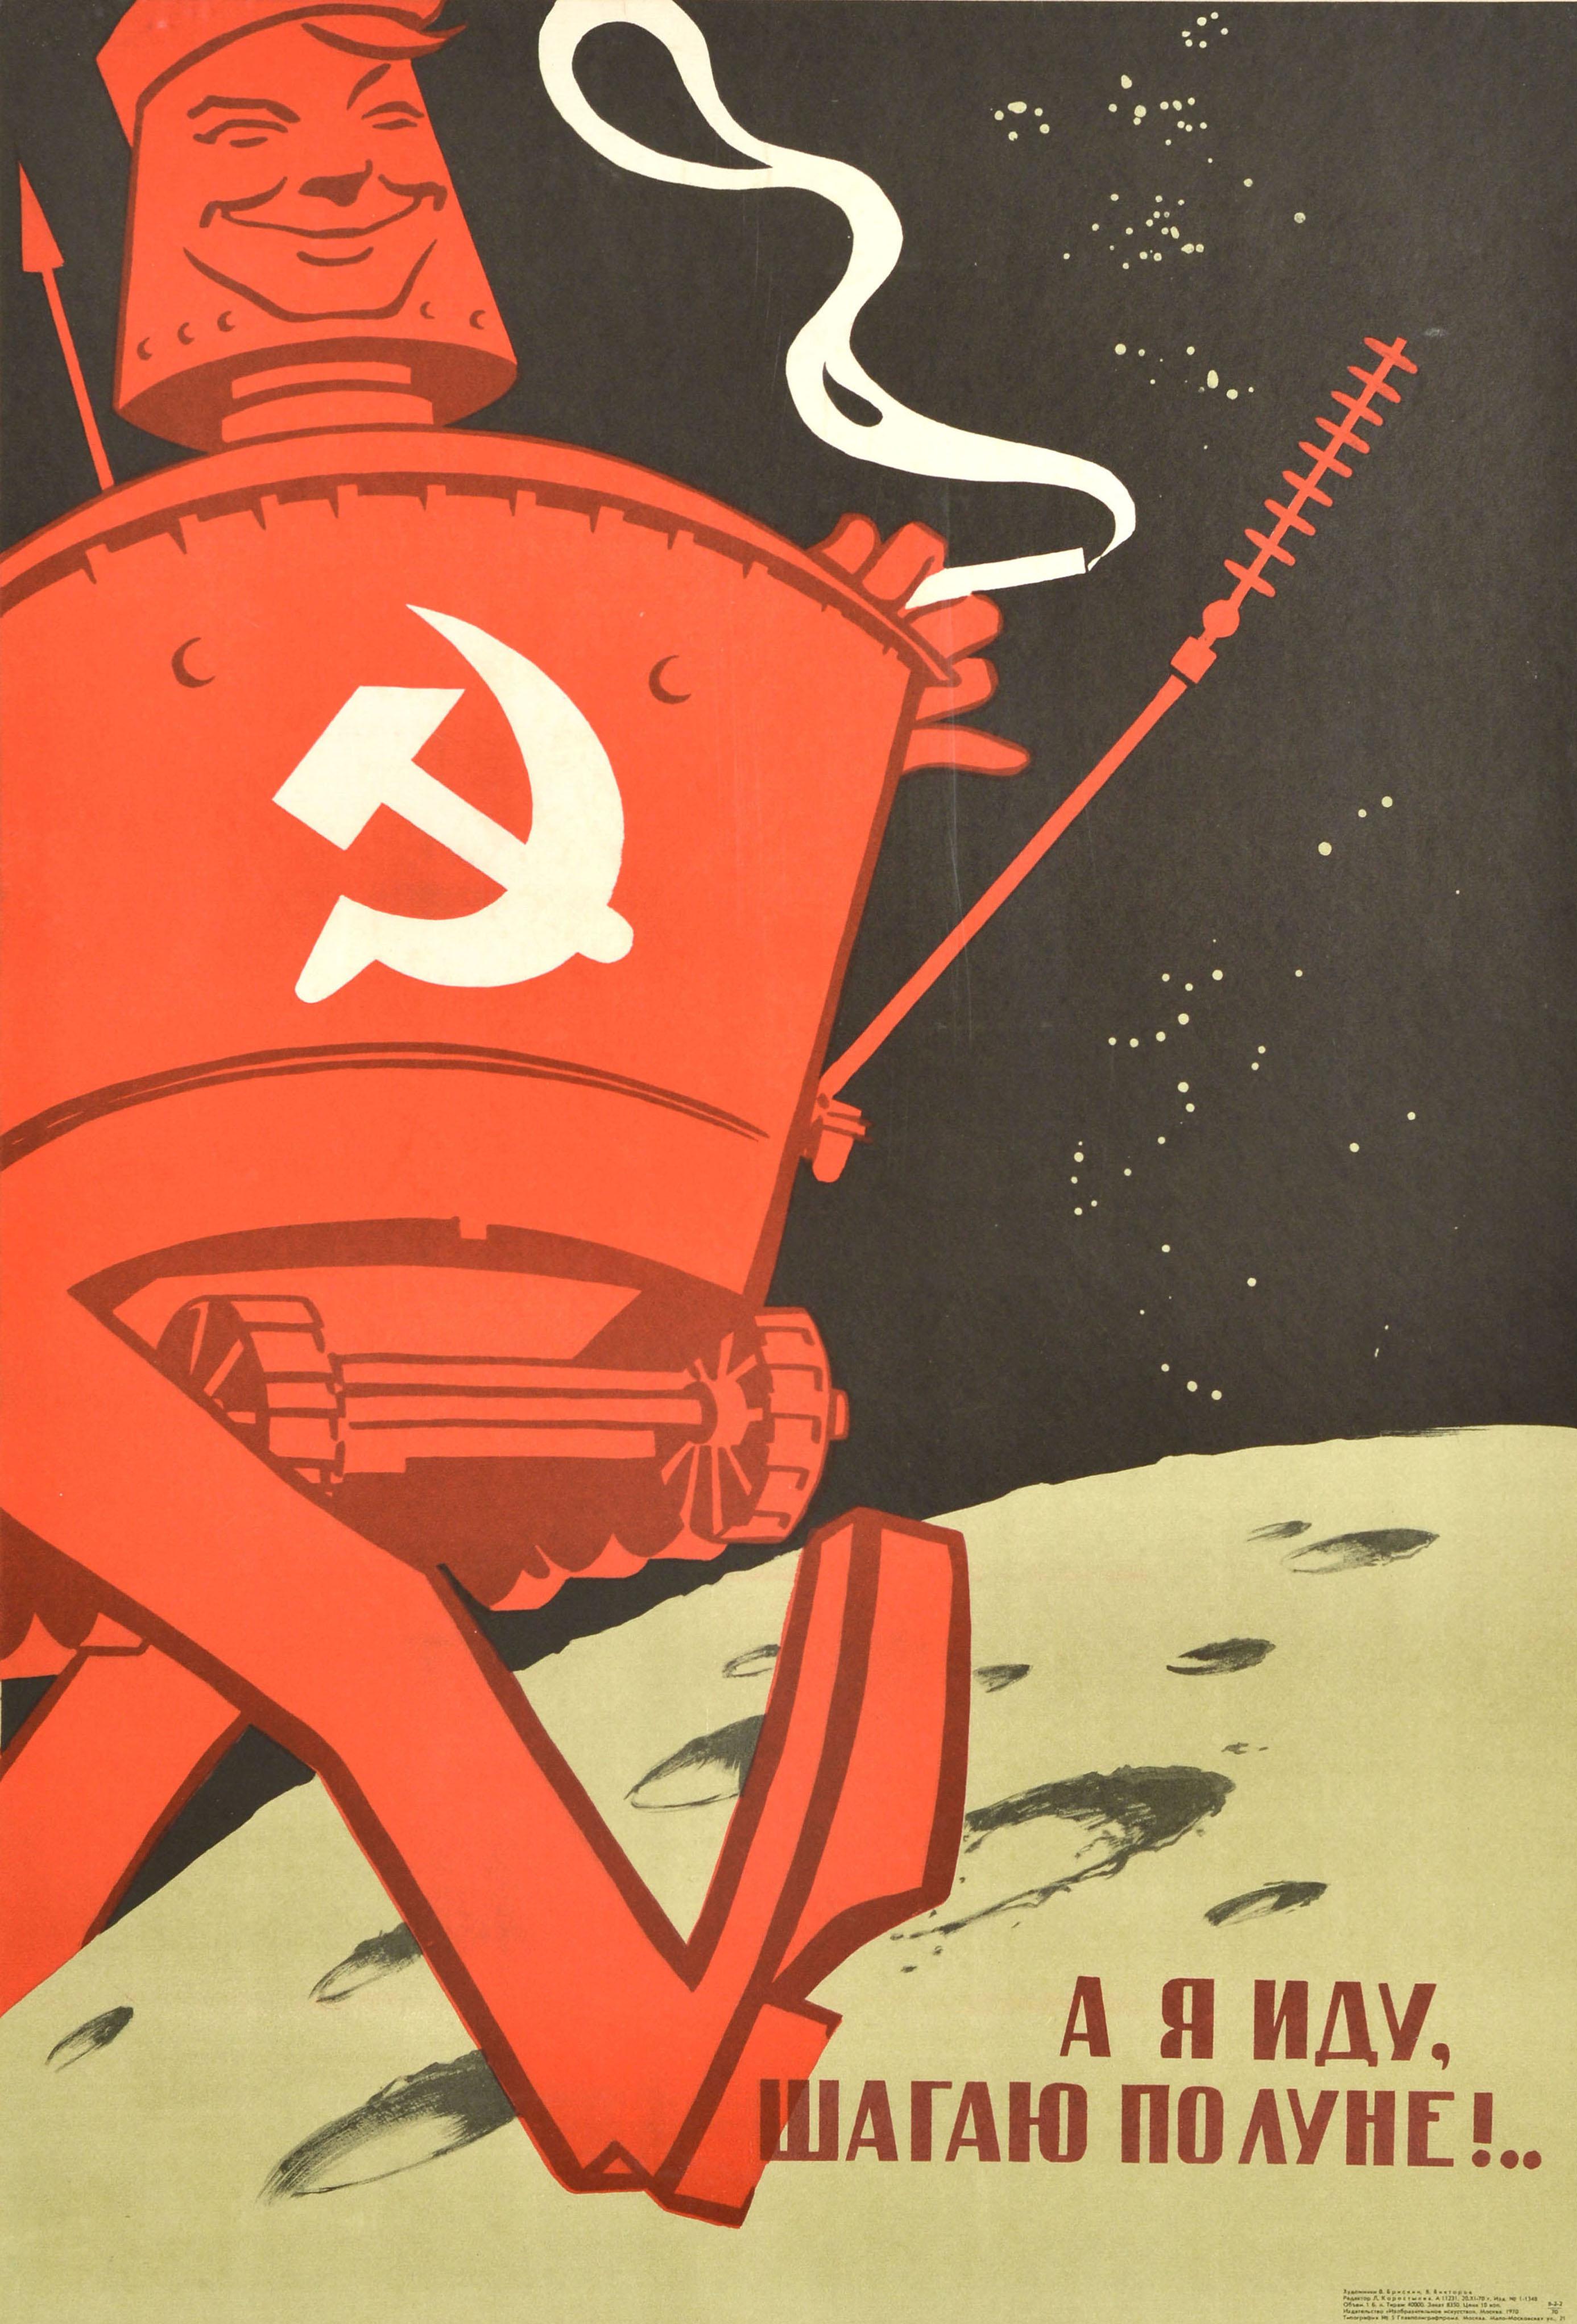 Original sowjetisches Propagandaposter - Ich gehe auf dem Mond! - mit einer lustigen Illustration eines lächelnden Lunokhod-Mondroboters, der auf dem Mond spazieren geht und eine Zigarette raucht, wobei der Satz einen beliebten Filmtitel der UdSSR